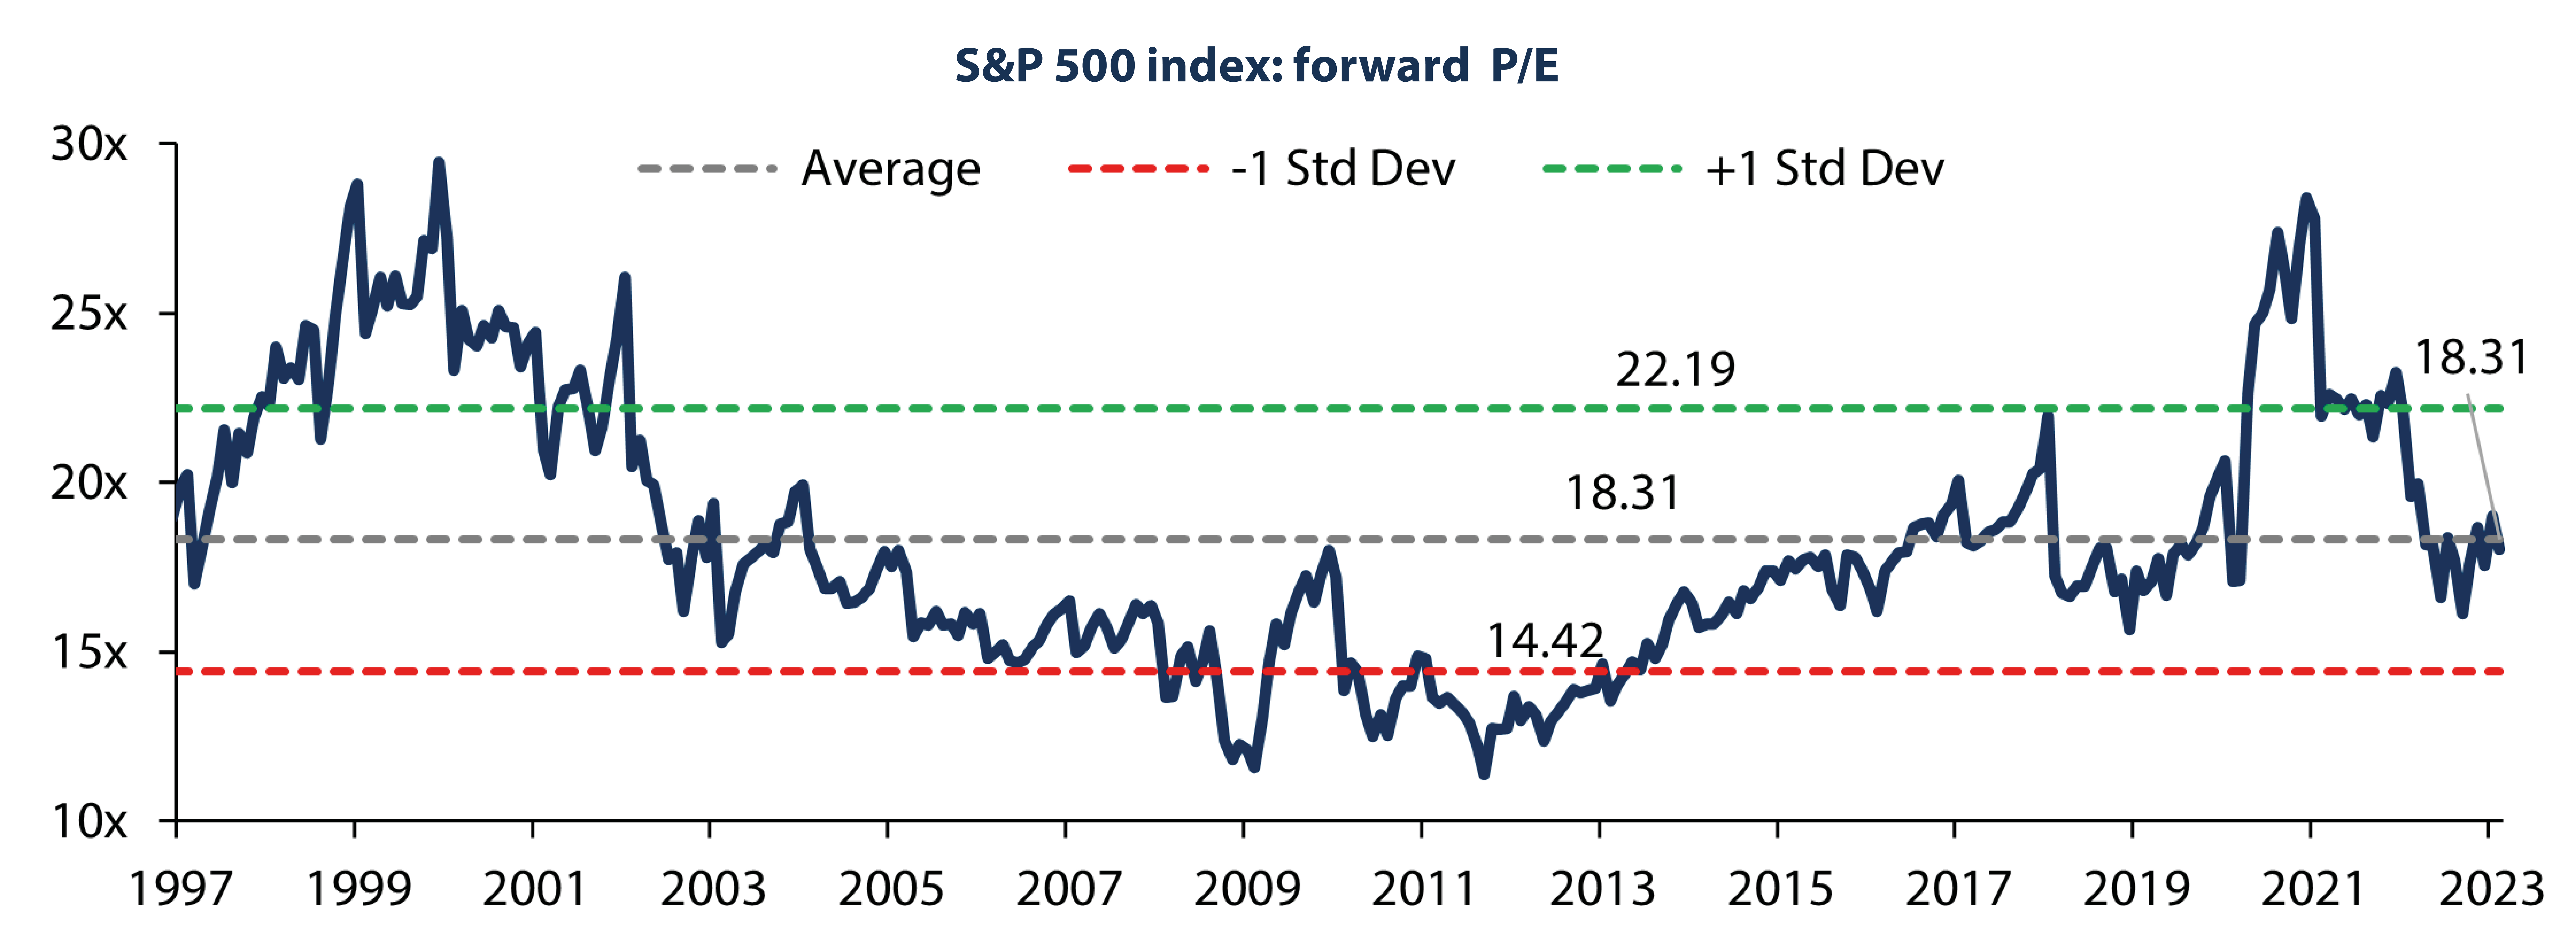 S&P 500 Index Forward P/E